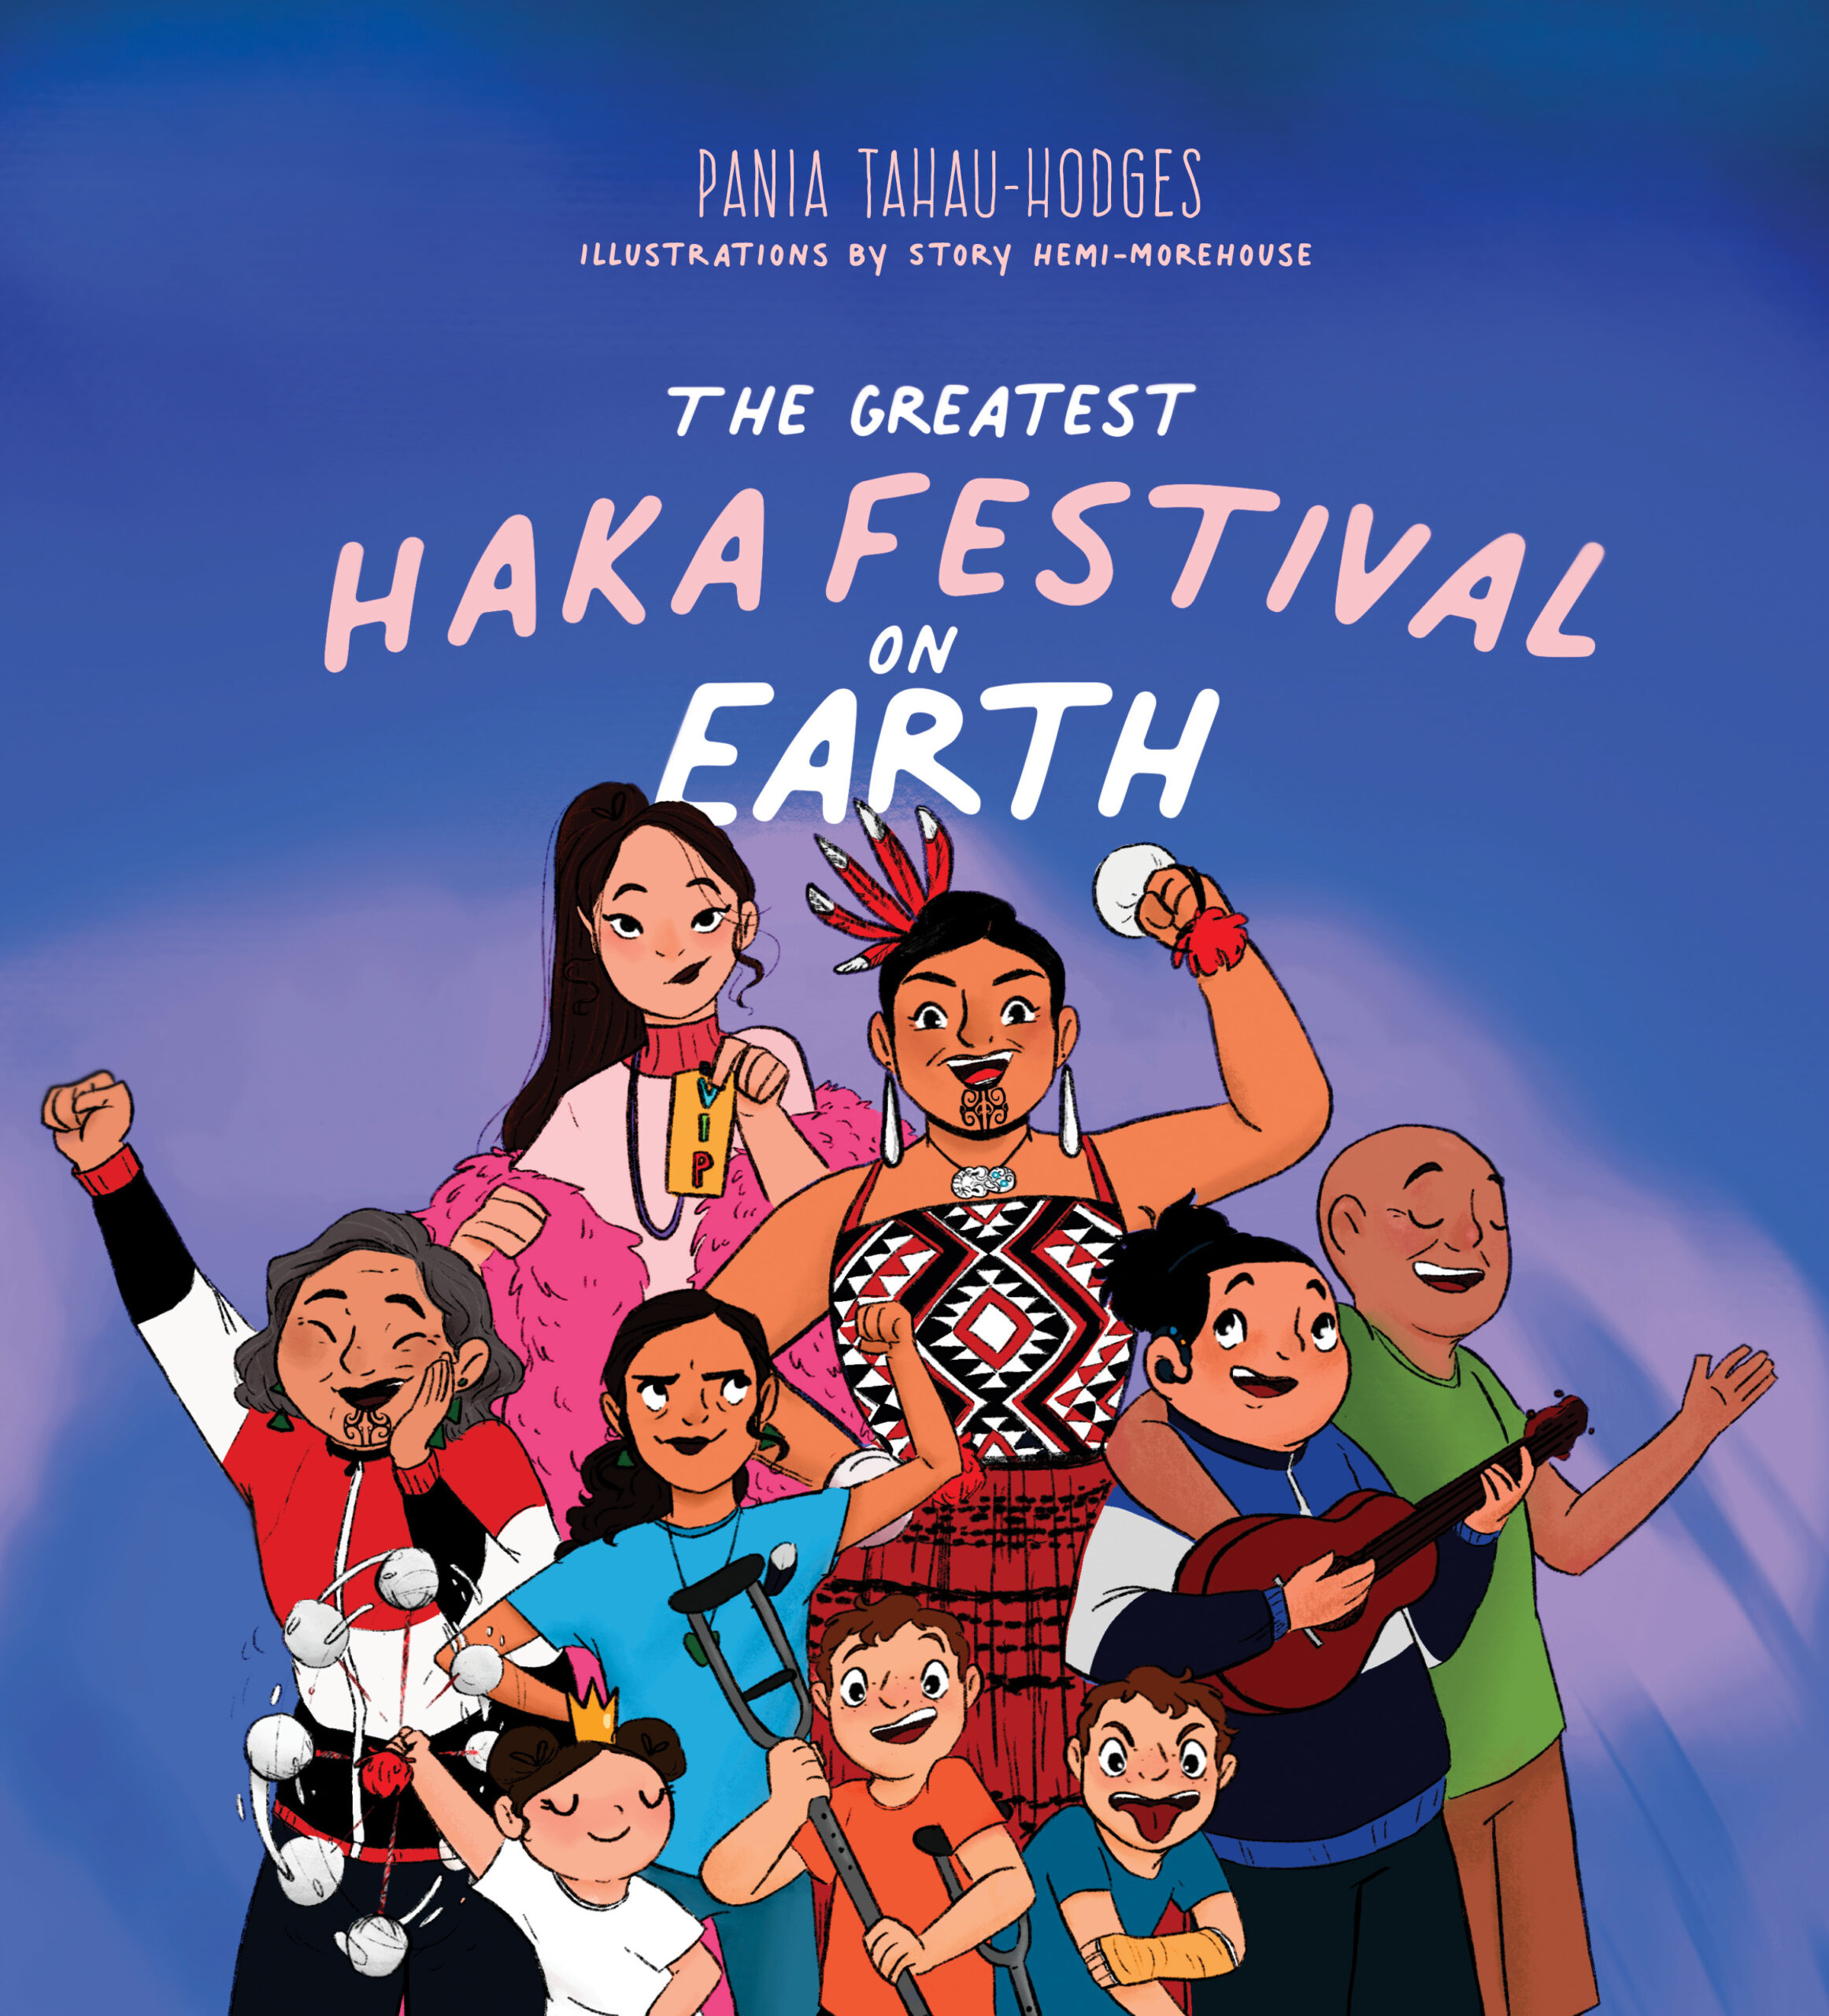 The Greatest Haka Festival on Earth